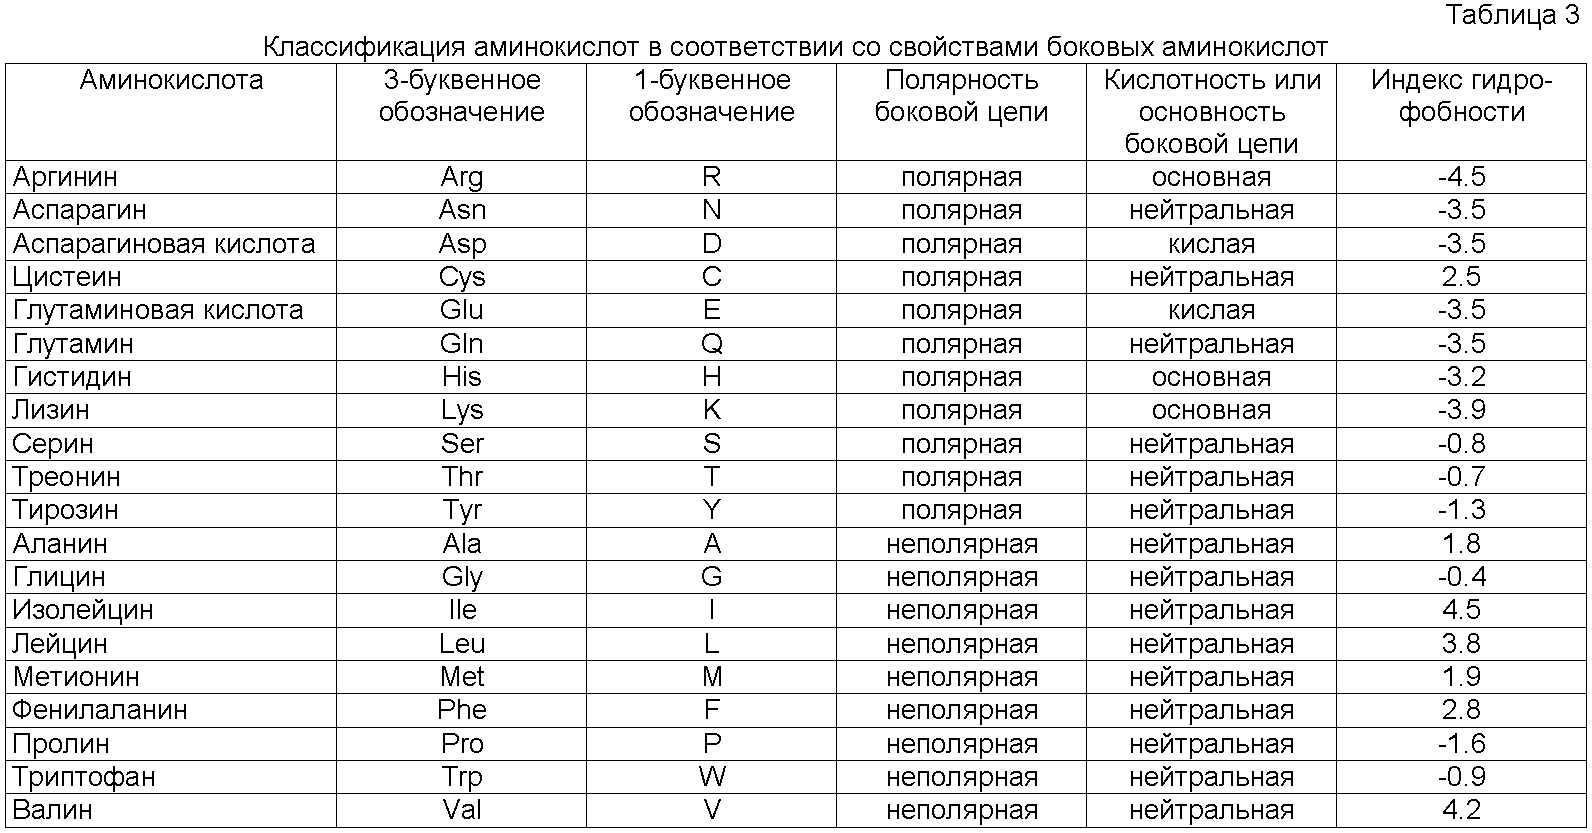 Какие годы нейтральные. Сокращения аминокислот таблица. Классификация аминокислот биохимия таблица. Формулы 20 аминокислот таблица. 20 Аминокислот таблица аминокислоты.